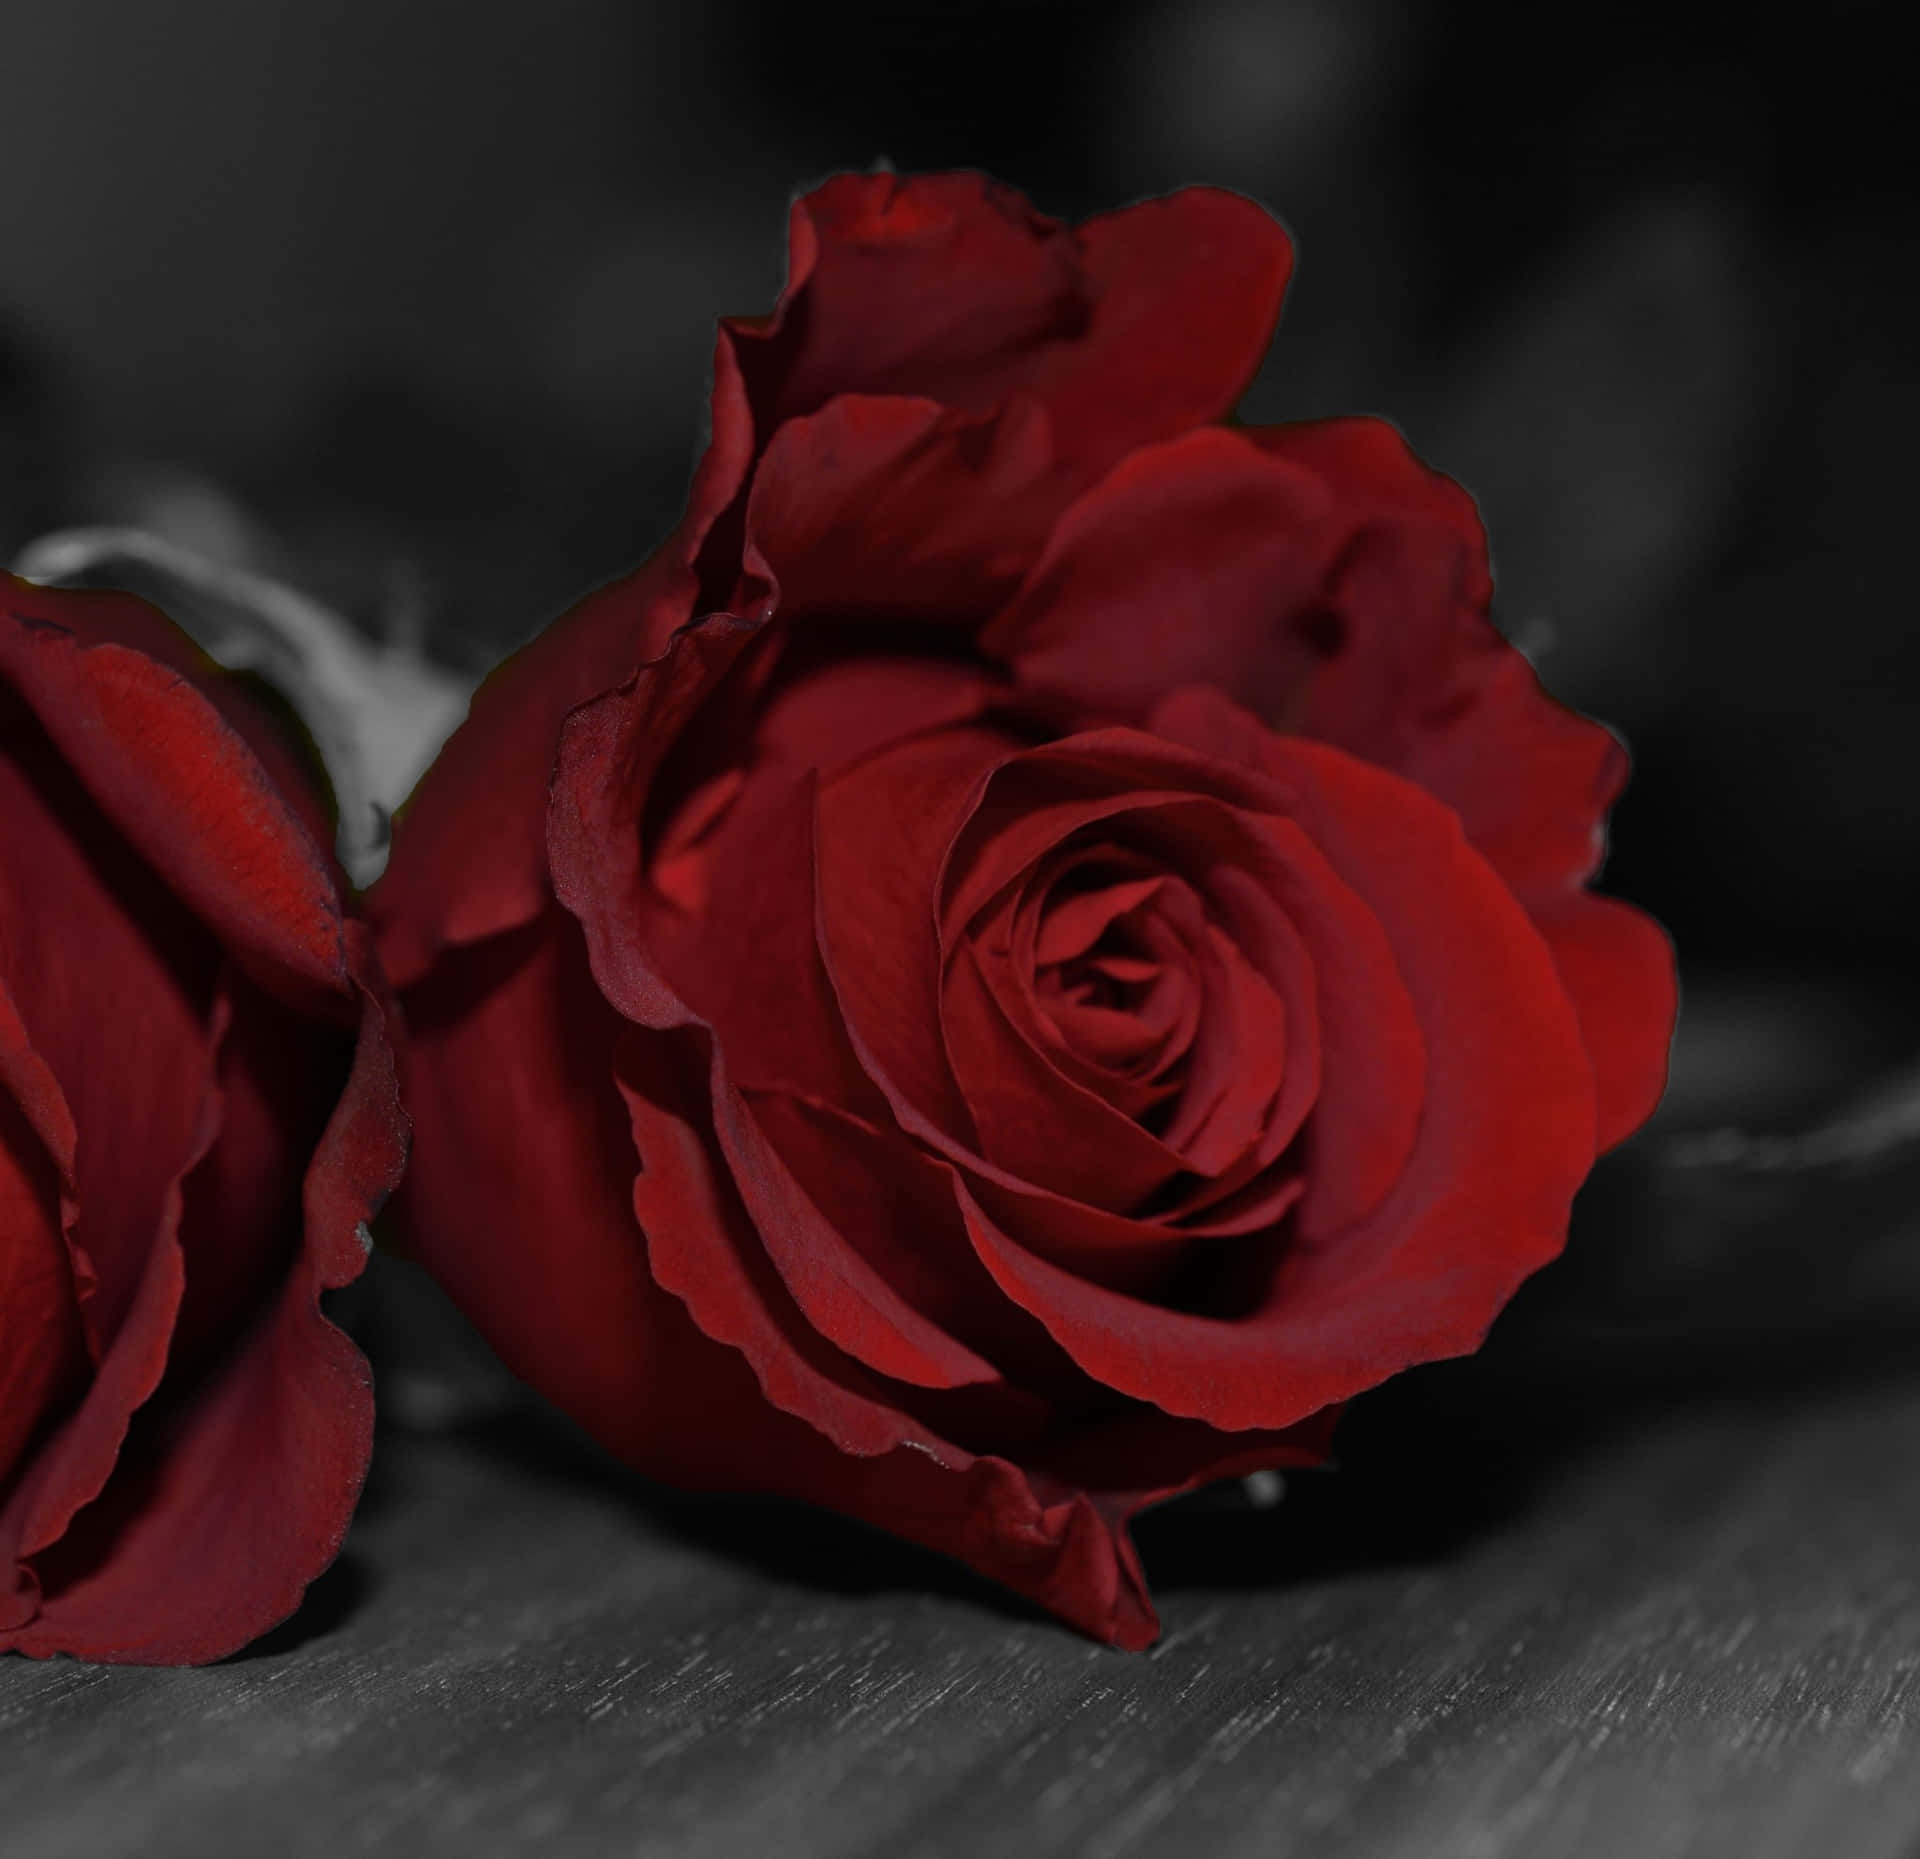 Imagende Rosas Rojas Oscuro.